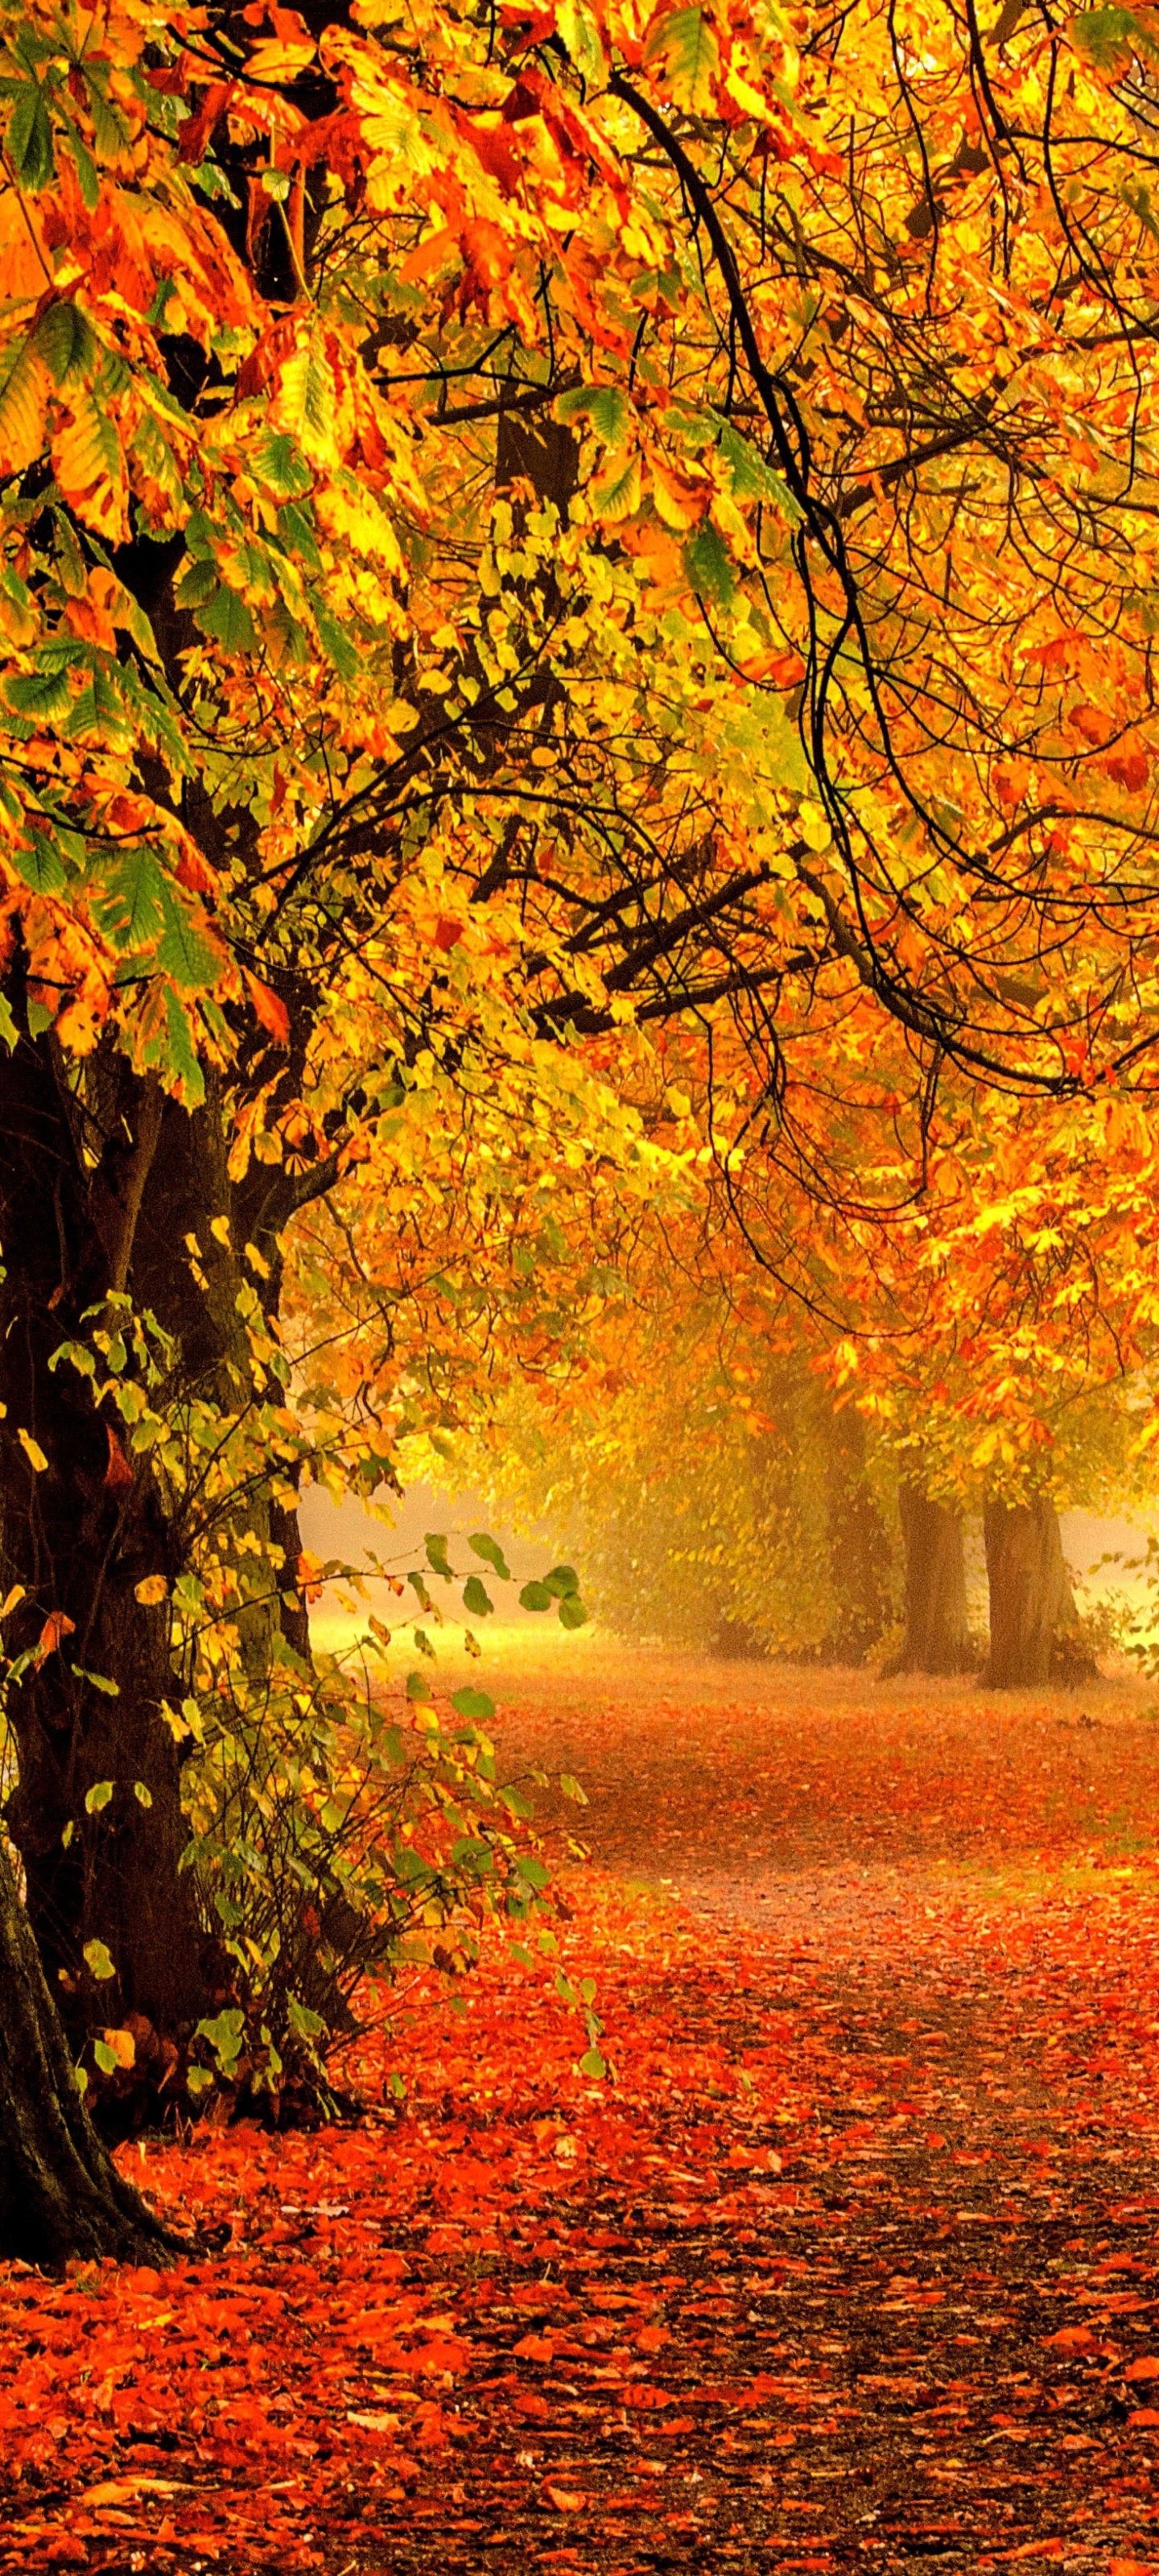 Скачать картинку Природа, Осень, Парк, Фотографии, Падать в телефон бесплатно.